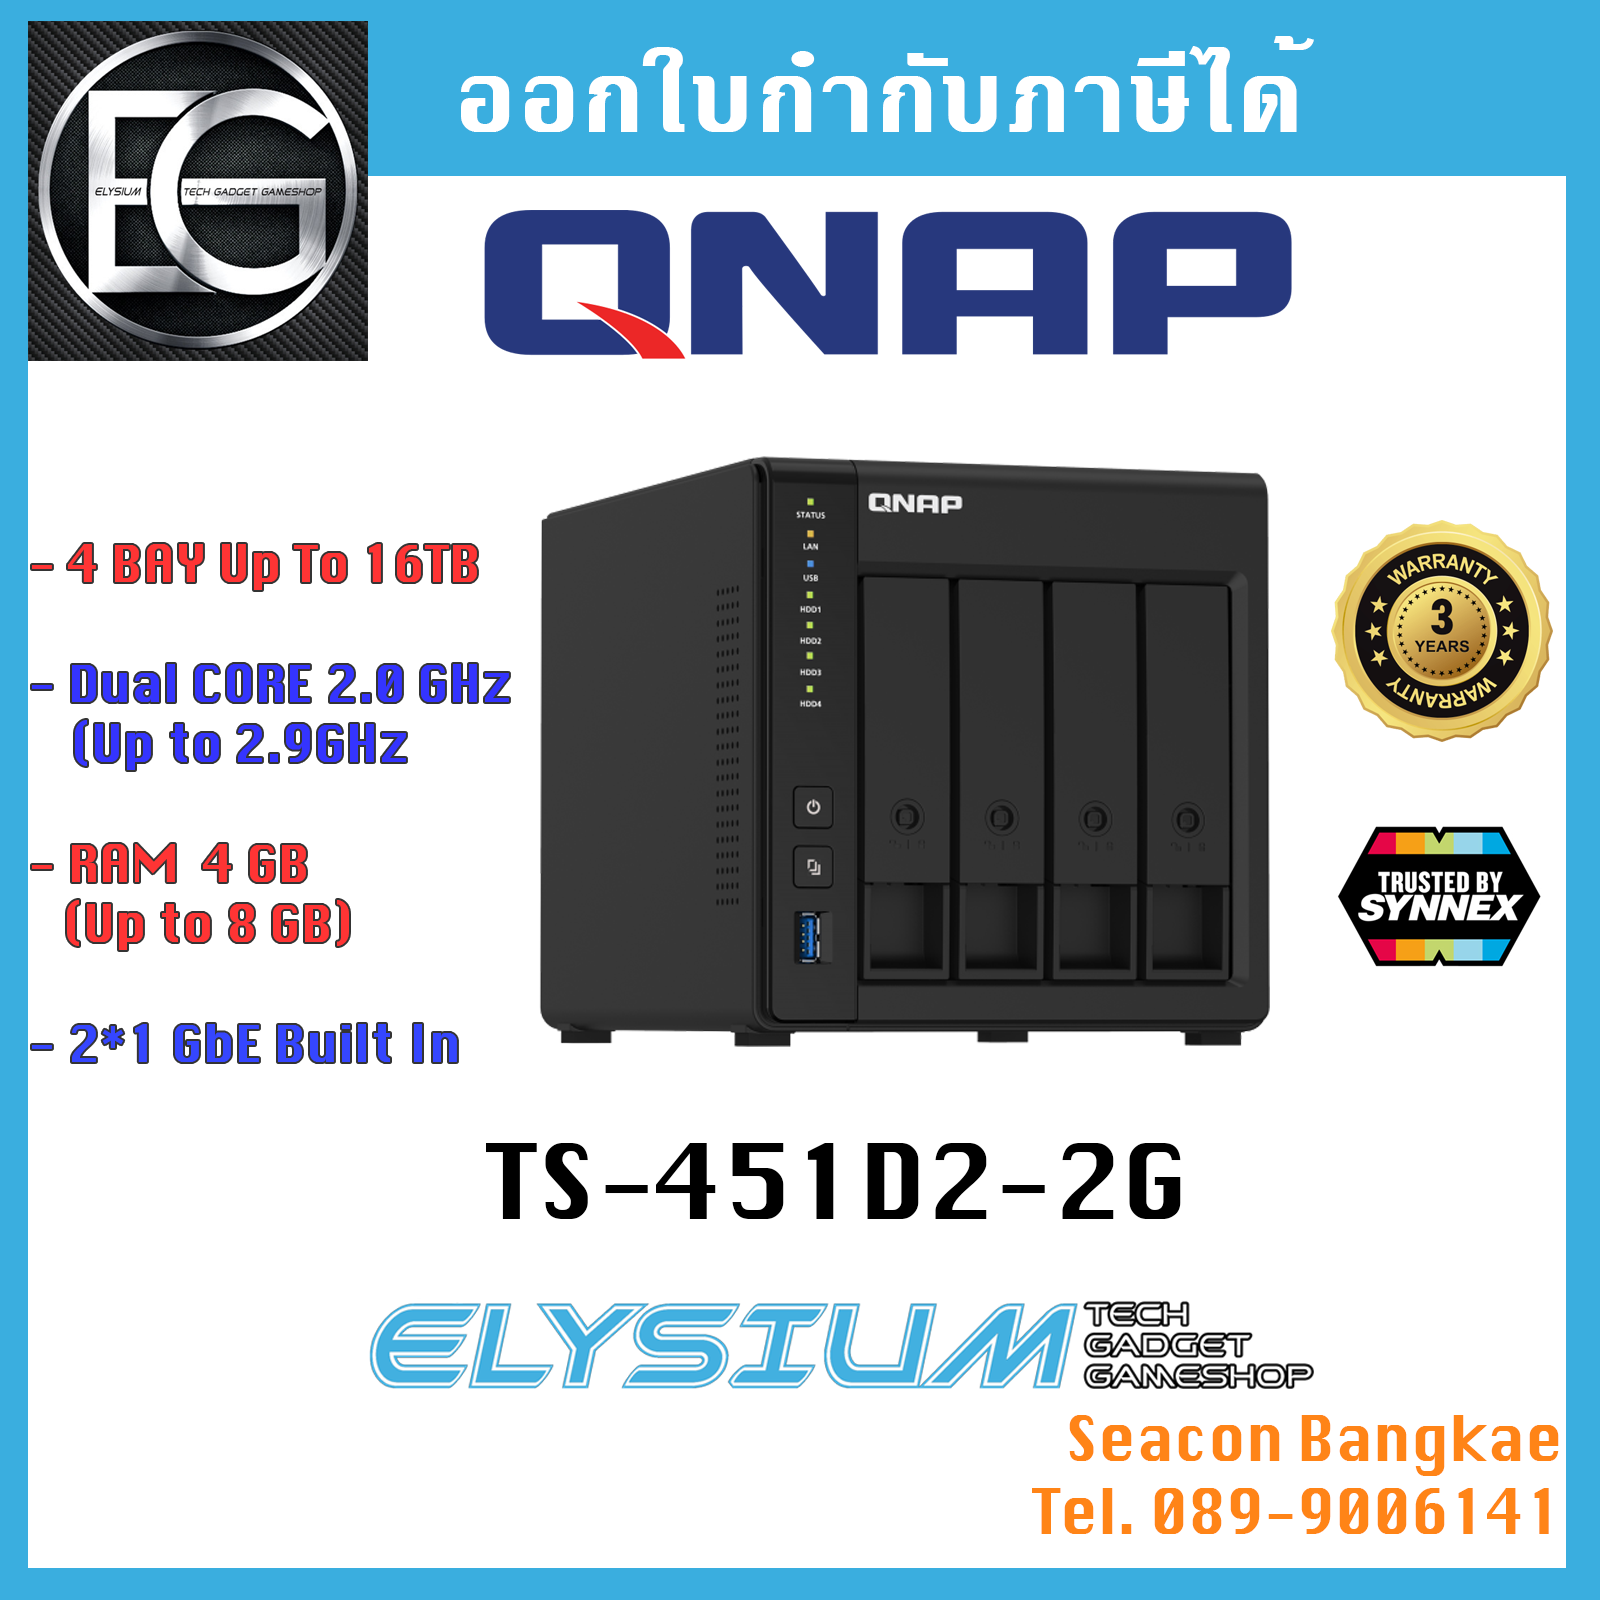 QNAP TS-451D2-2G 4Bay NAS,Intel J4025 Dual Core 2.0GHz,2GB RAM ประกันศูนย์ไทย